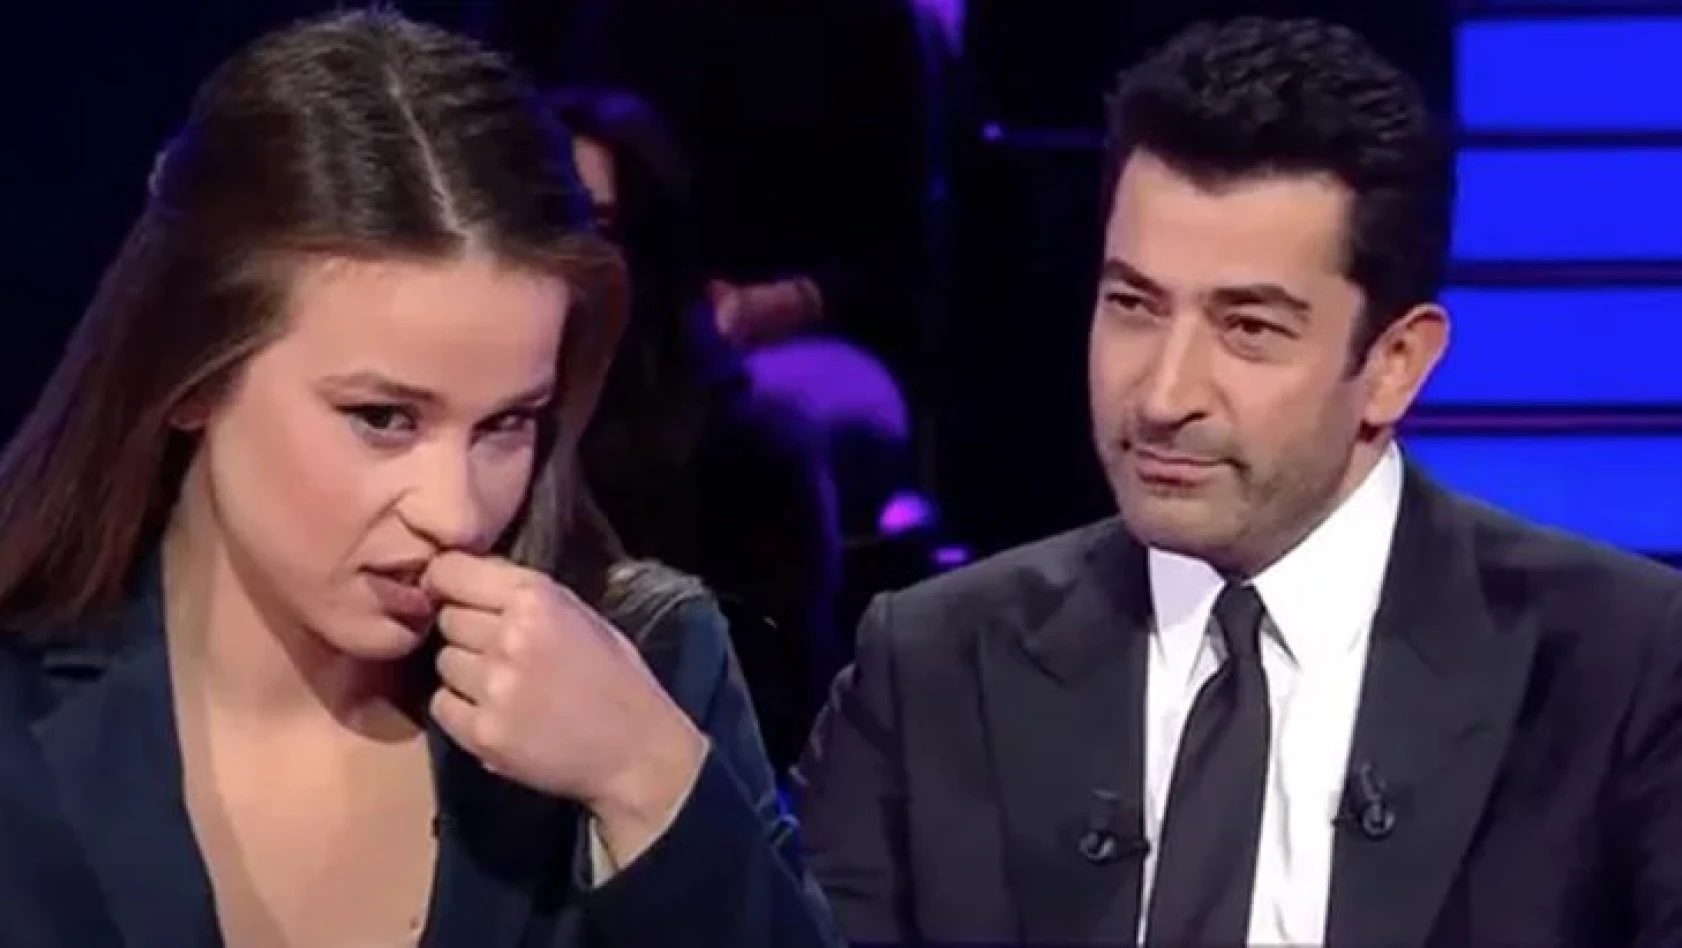 Kim Milyoner Olmak İster yarışmasında oyuncu Elif Karagöz basit matematik sorusunda elendi